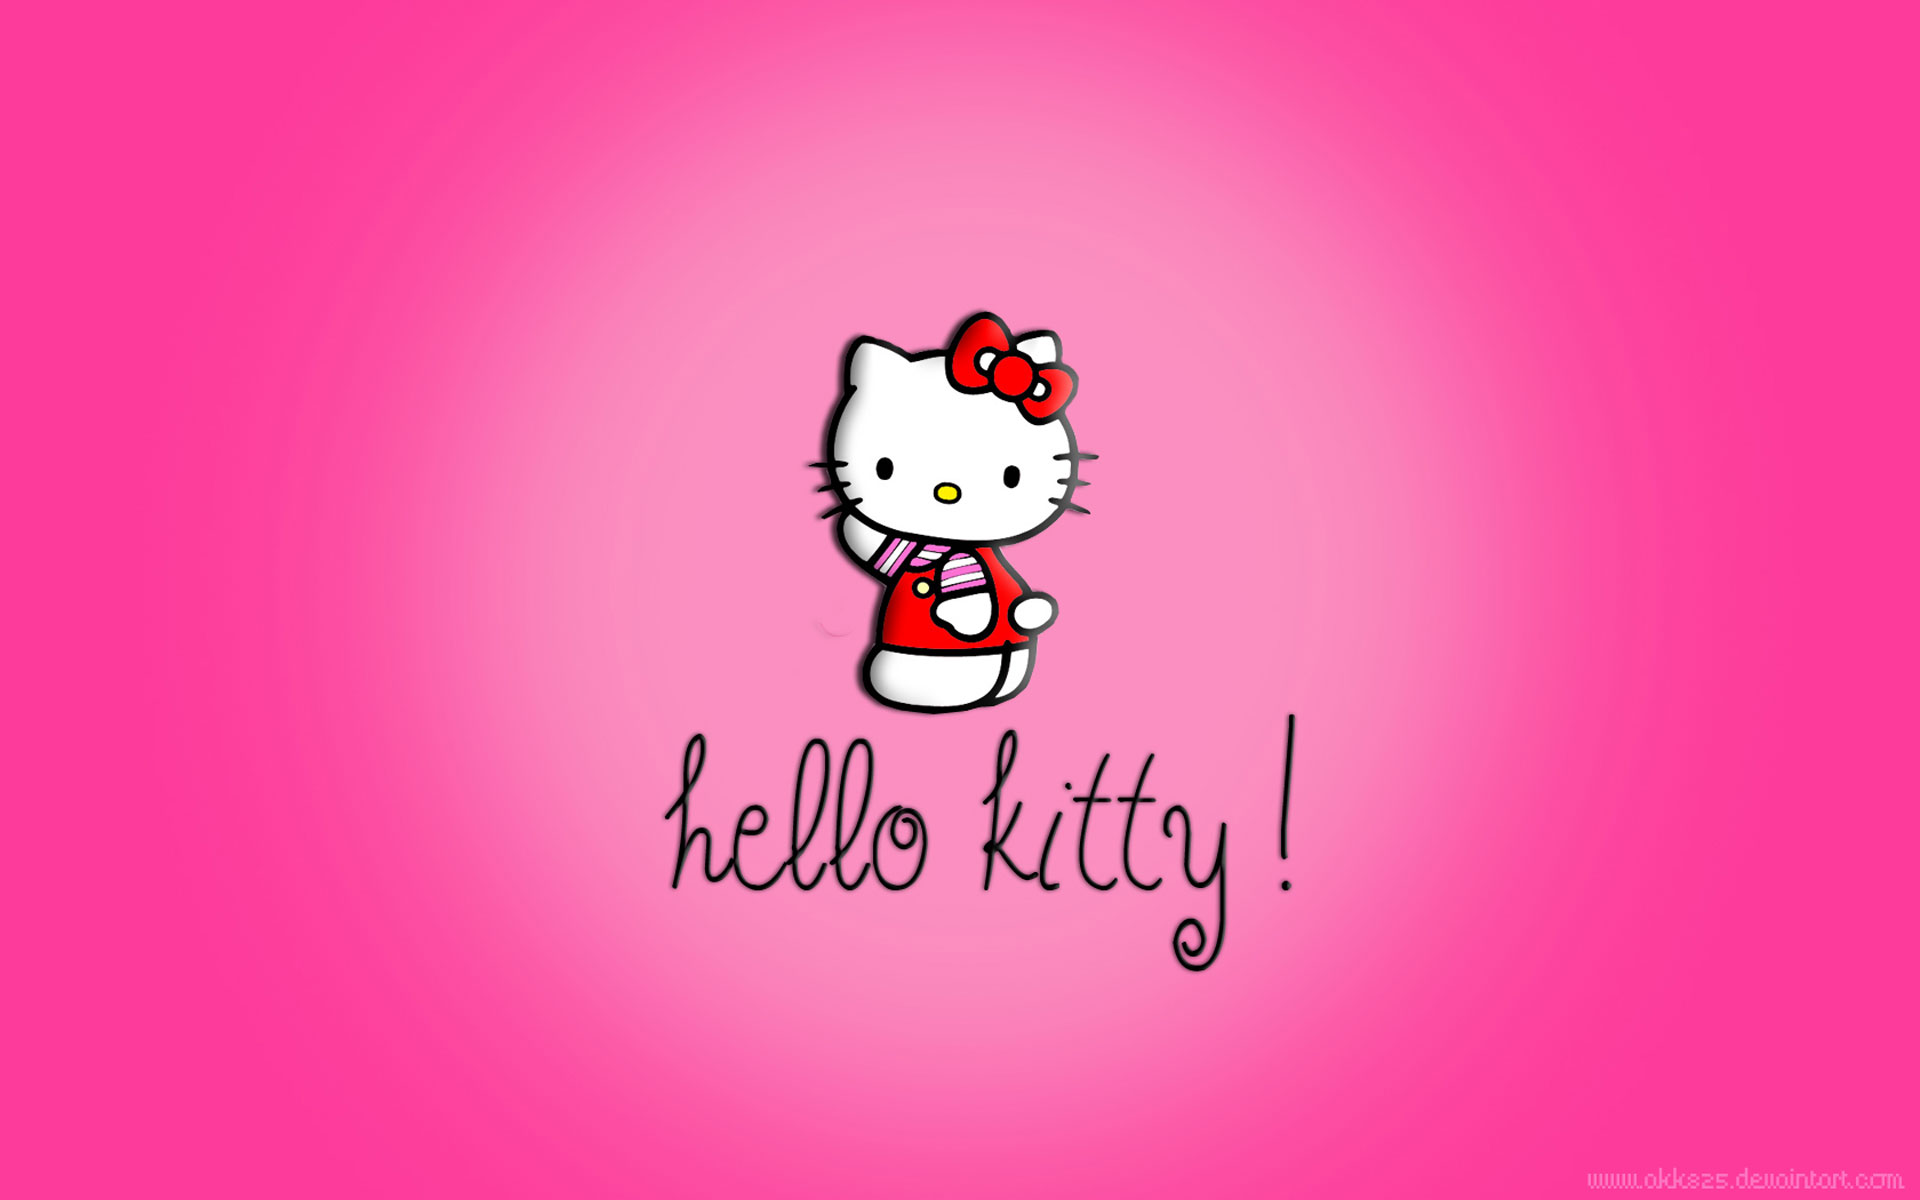 Bạn đang tìm kiếm một cách để tạo ra một phòng tắm đáng yêu cho con bạn? Vậy hãy tìm kiếm ngay các mẫu giấy dán tường Hello Kitty. Với sự kết hợp giữa màu hồng và hình ảnh chú mèo Hello Kitty, phòng tắm của bạn sẽ trở nên dễ thương và đáng yêu hơn bao giờ hết.